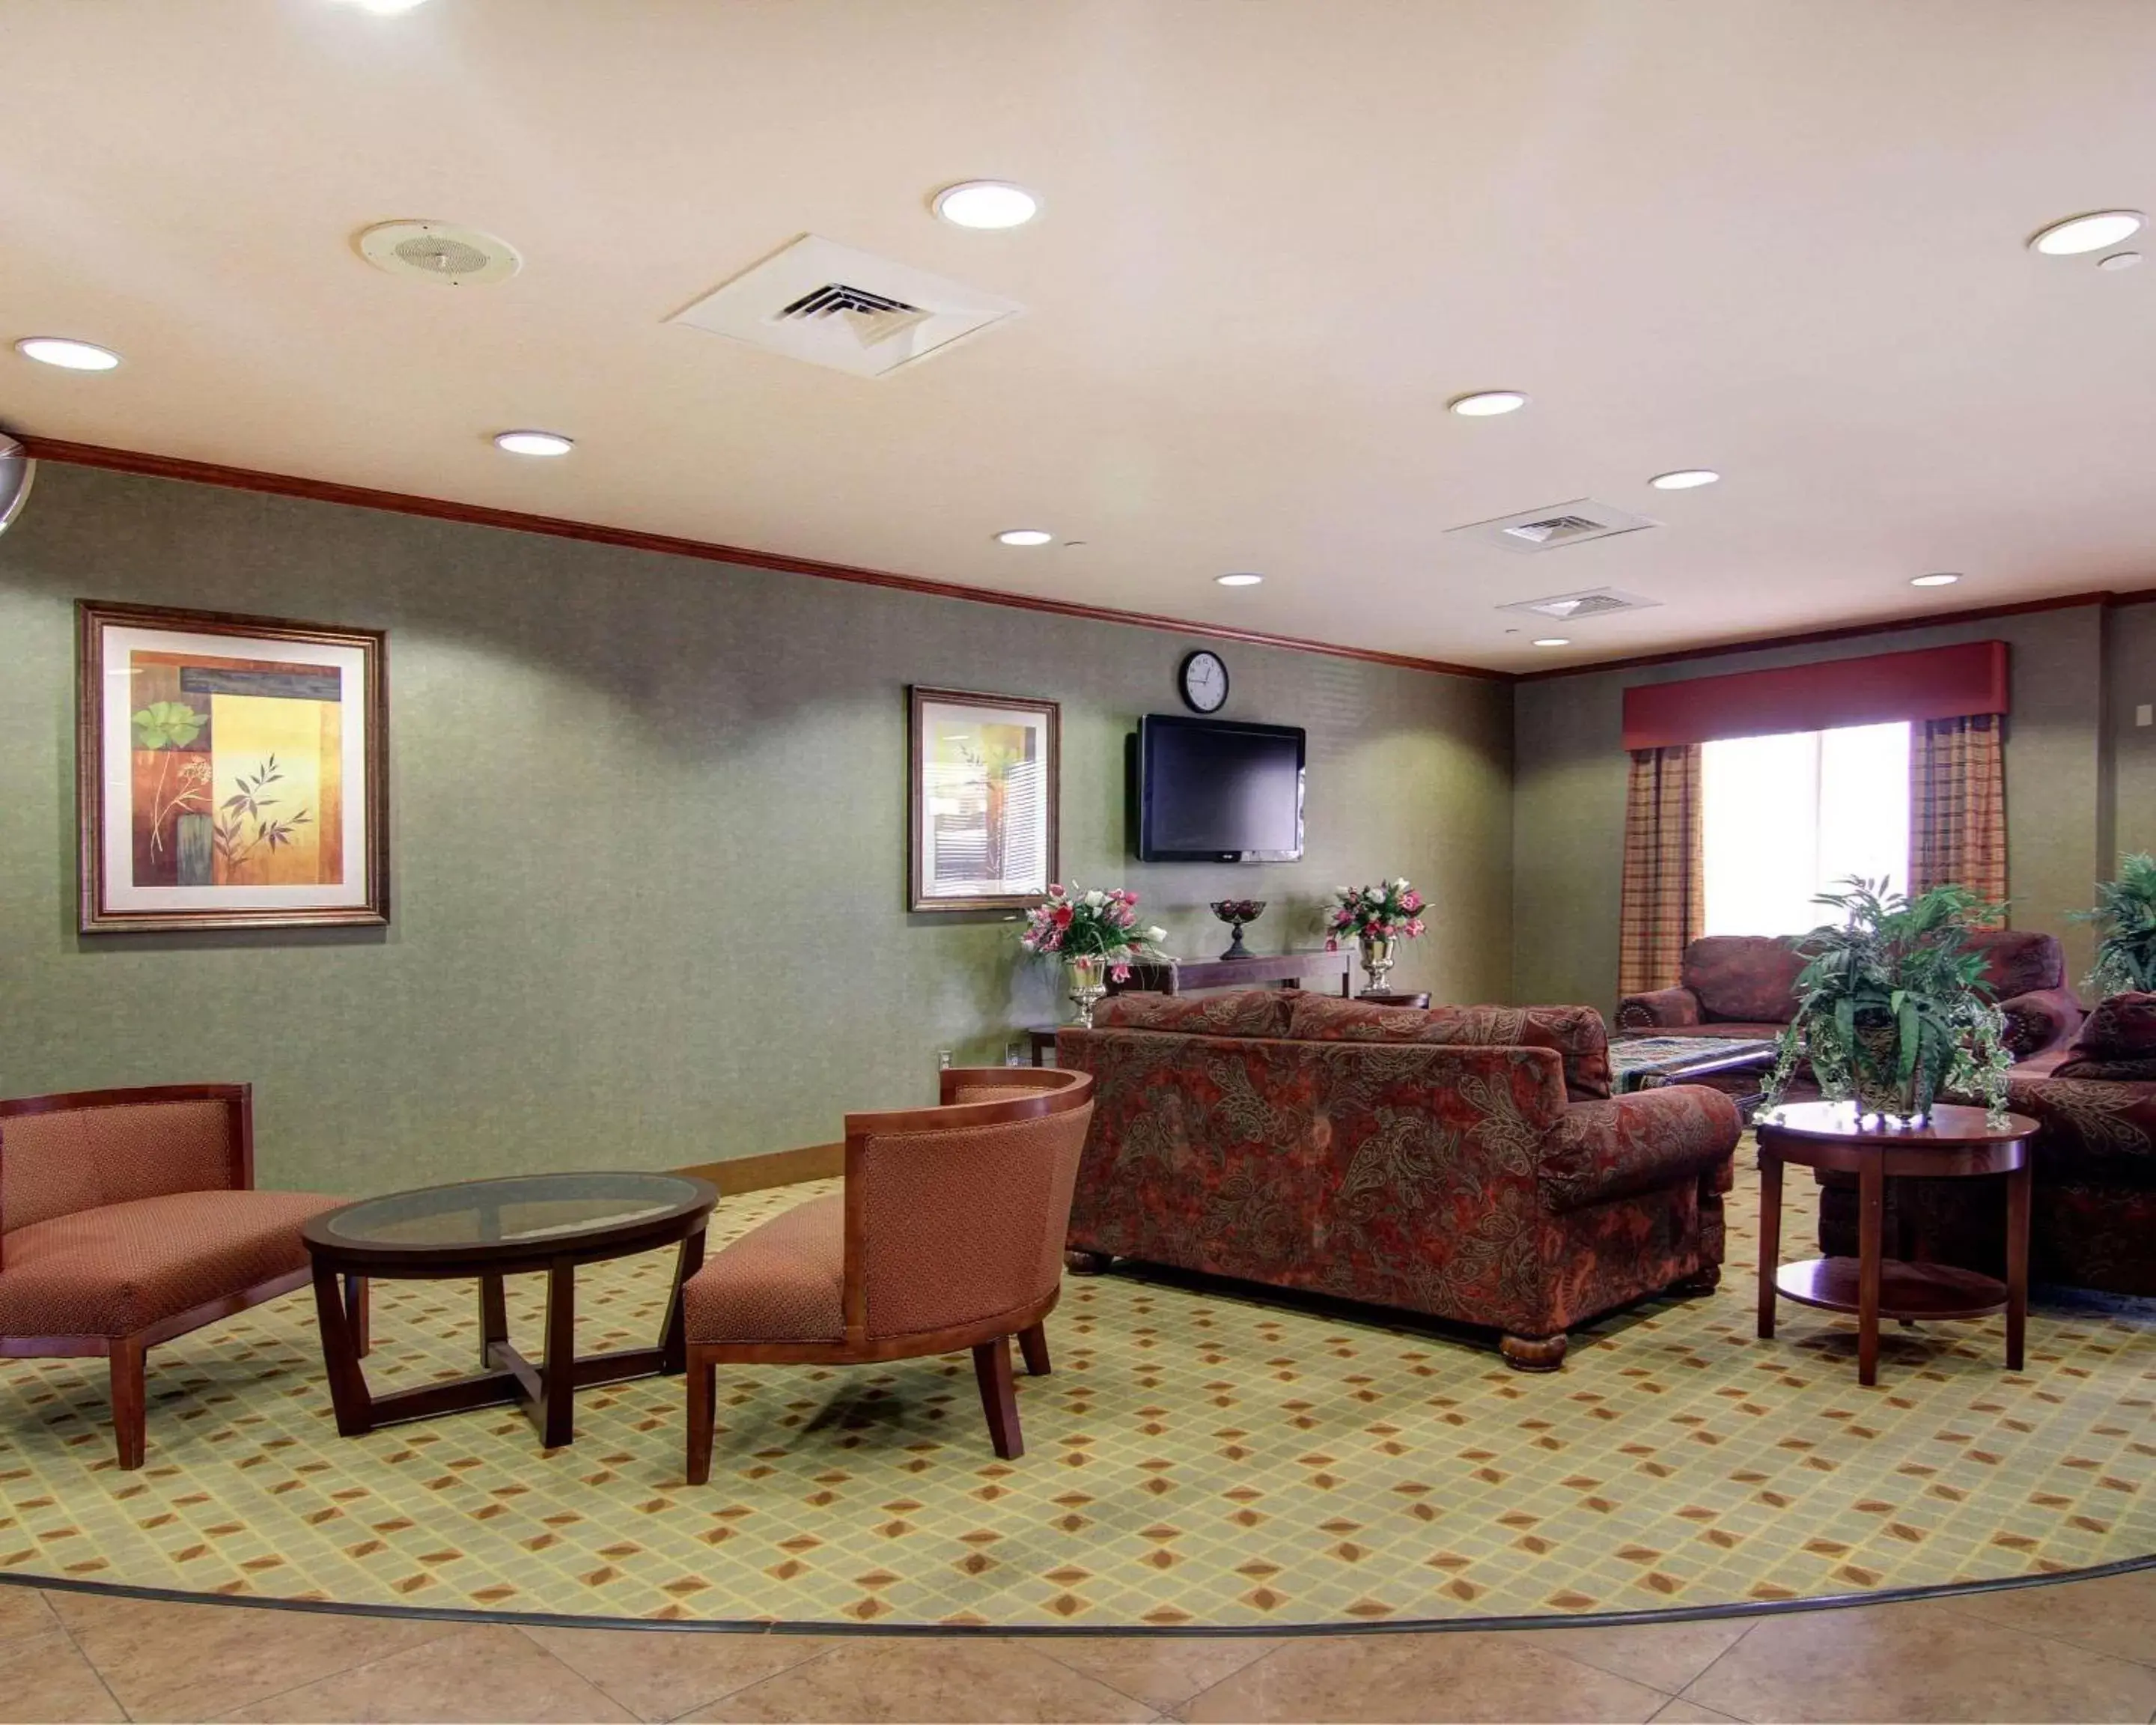 Lobby or reception, Lobby/Reception in Comfort Suites El Paso West